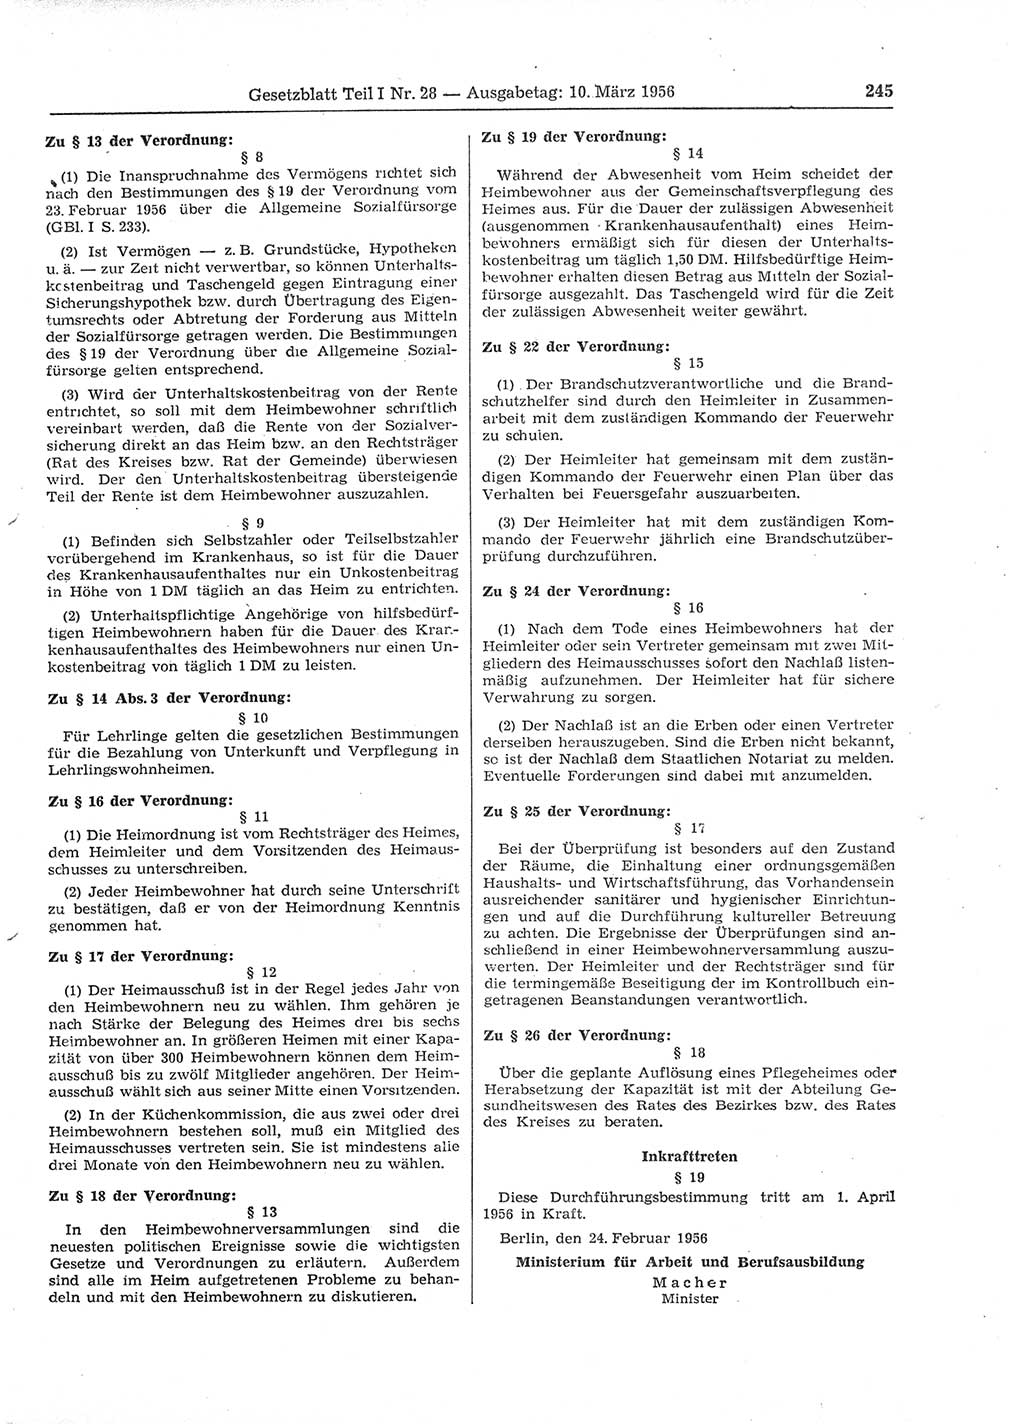 Gesetzblatt (GBl.) der Deutschen Demokratischen Republik (DDR) Teil Ⅰ 1956, Seite 245 (GBl. DDR Ⅰ 1956, S. 245)